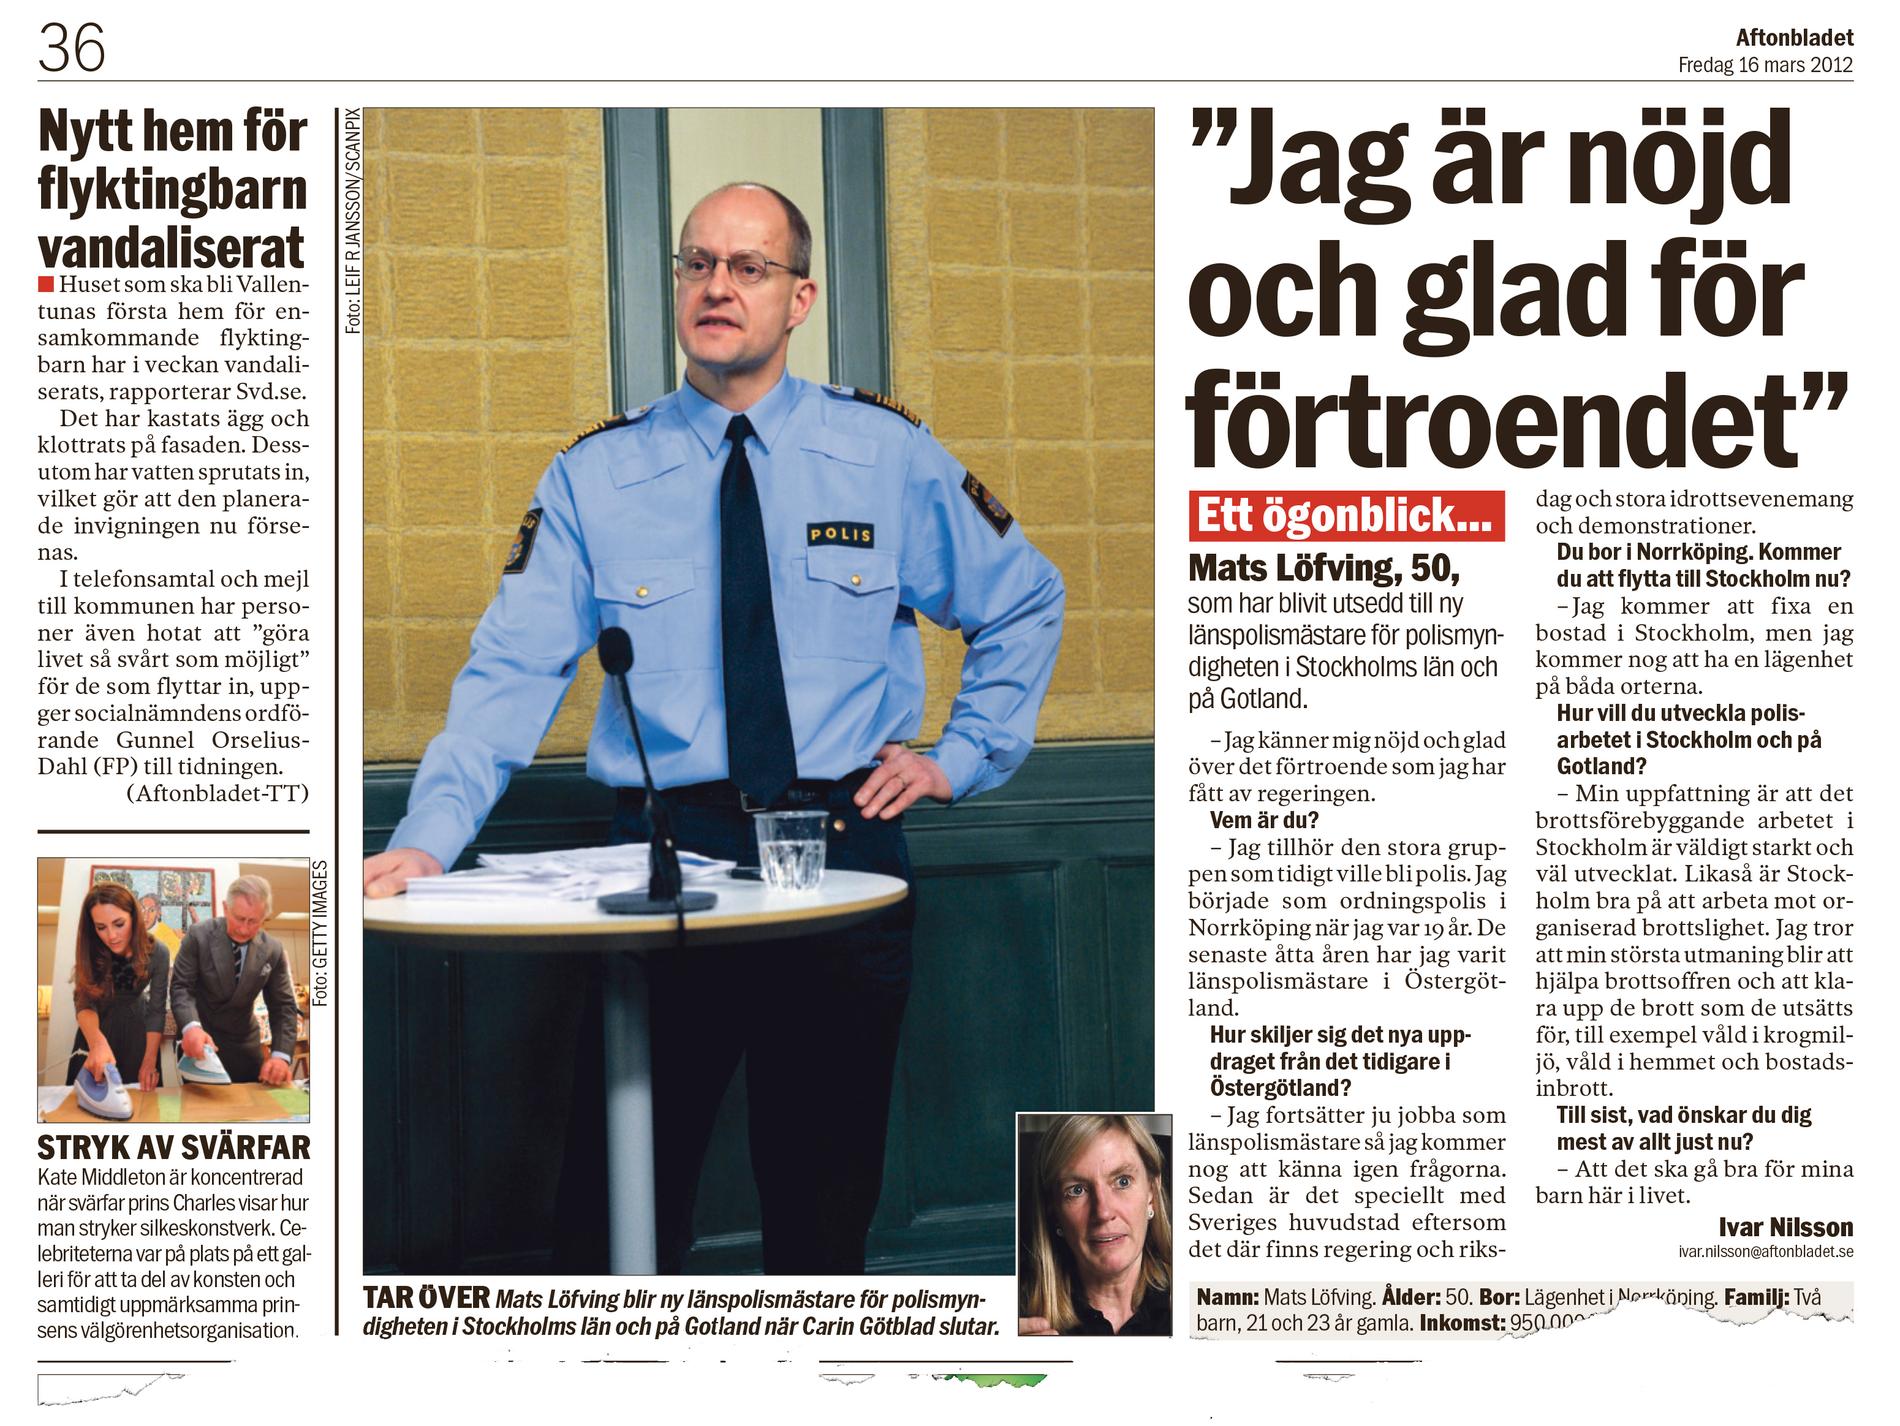 Aftonbladets artikel från den 16 mars 2012, då han utsetts till ny länspolismästare i Stockholm och på Gotland.